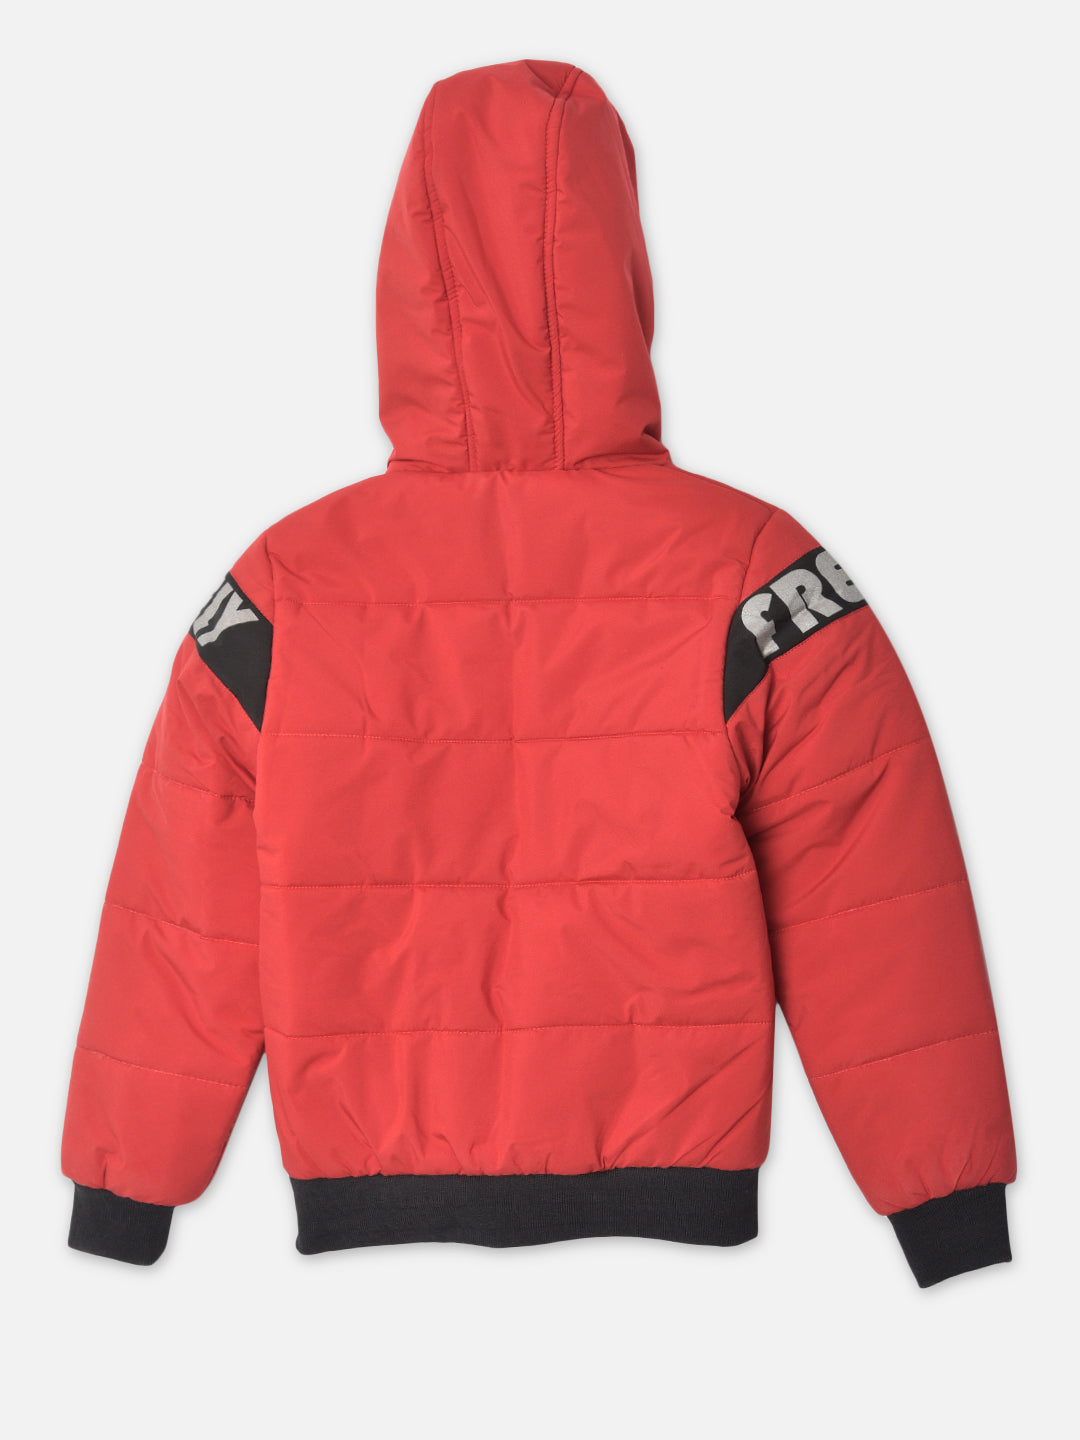 Red Printed Hooded Jacket - Boys Jacket